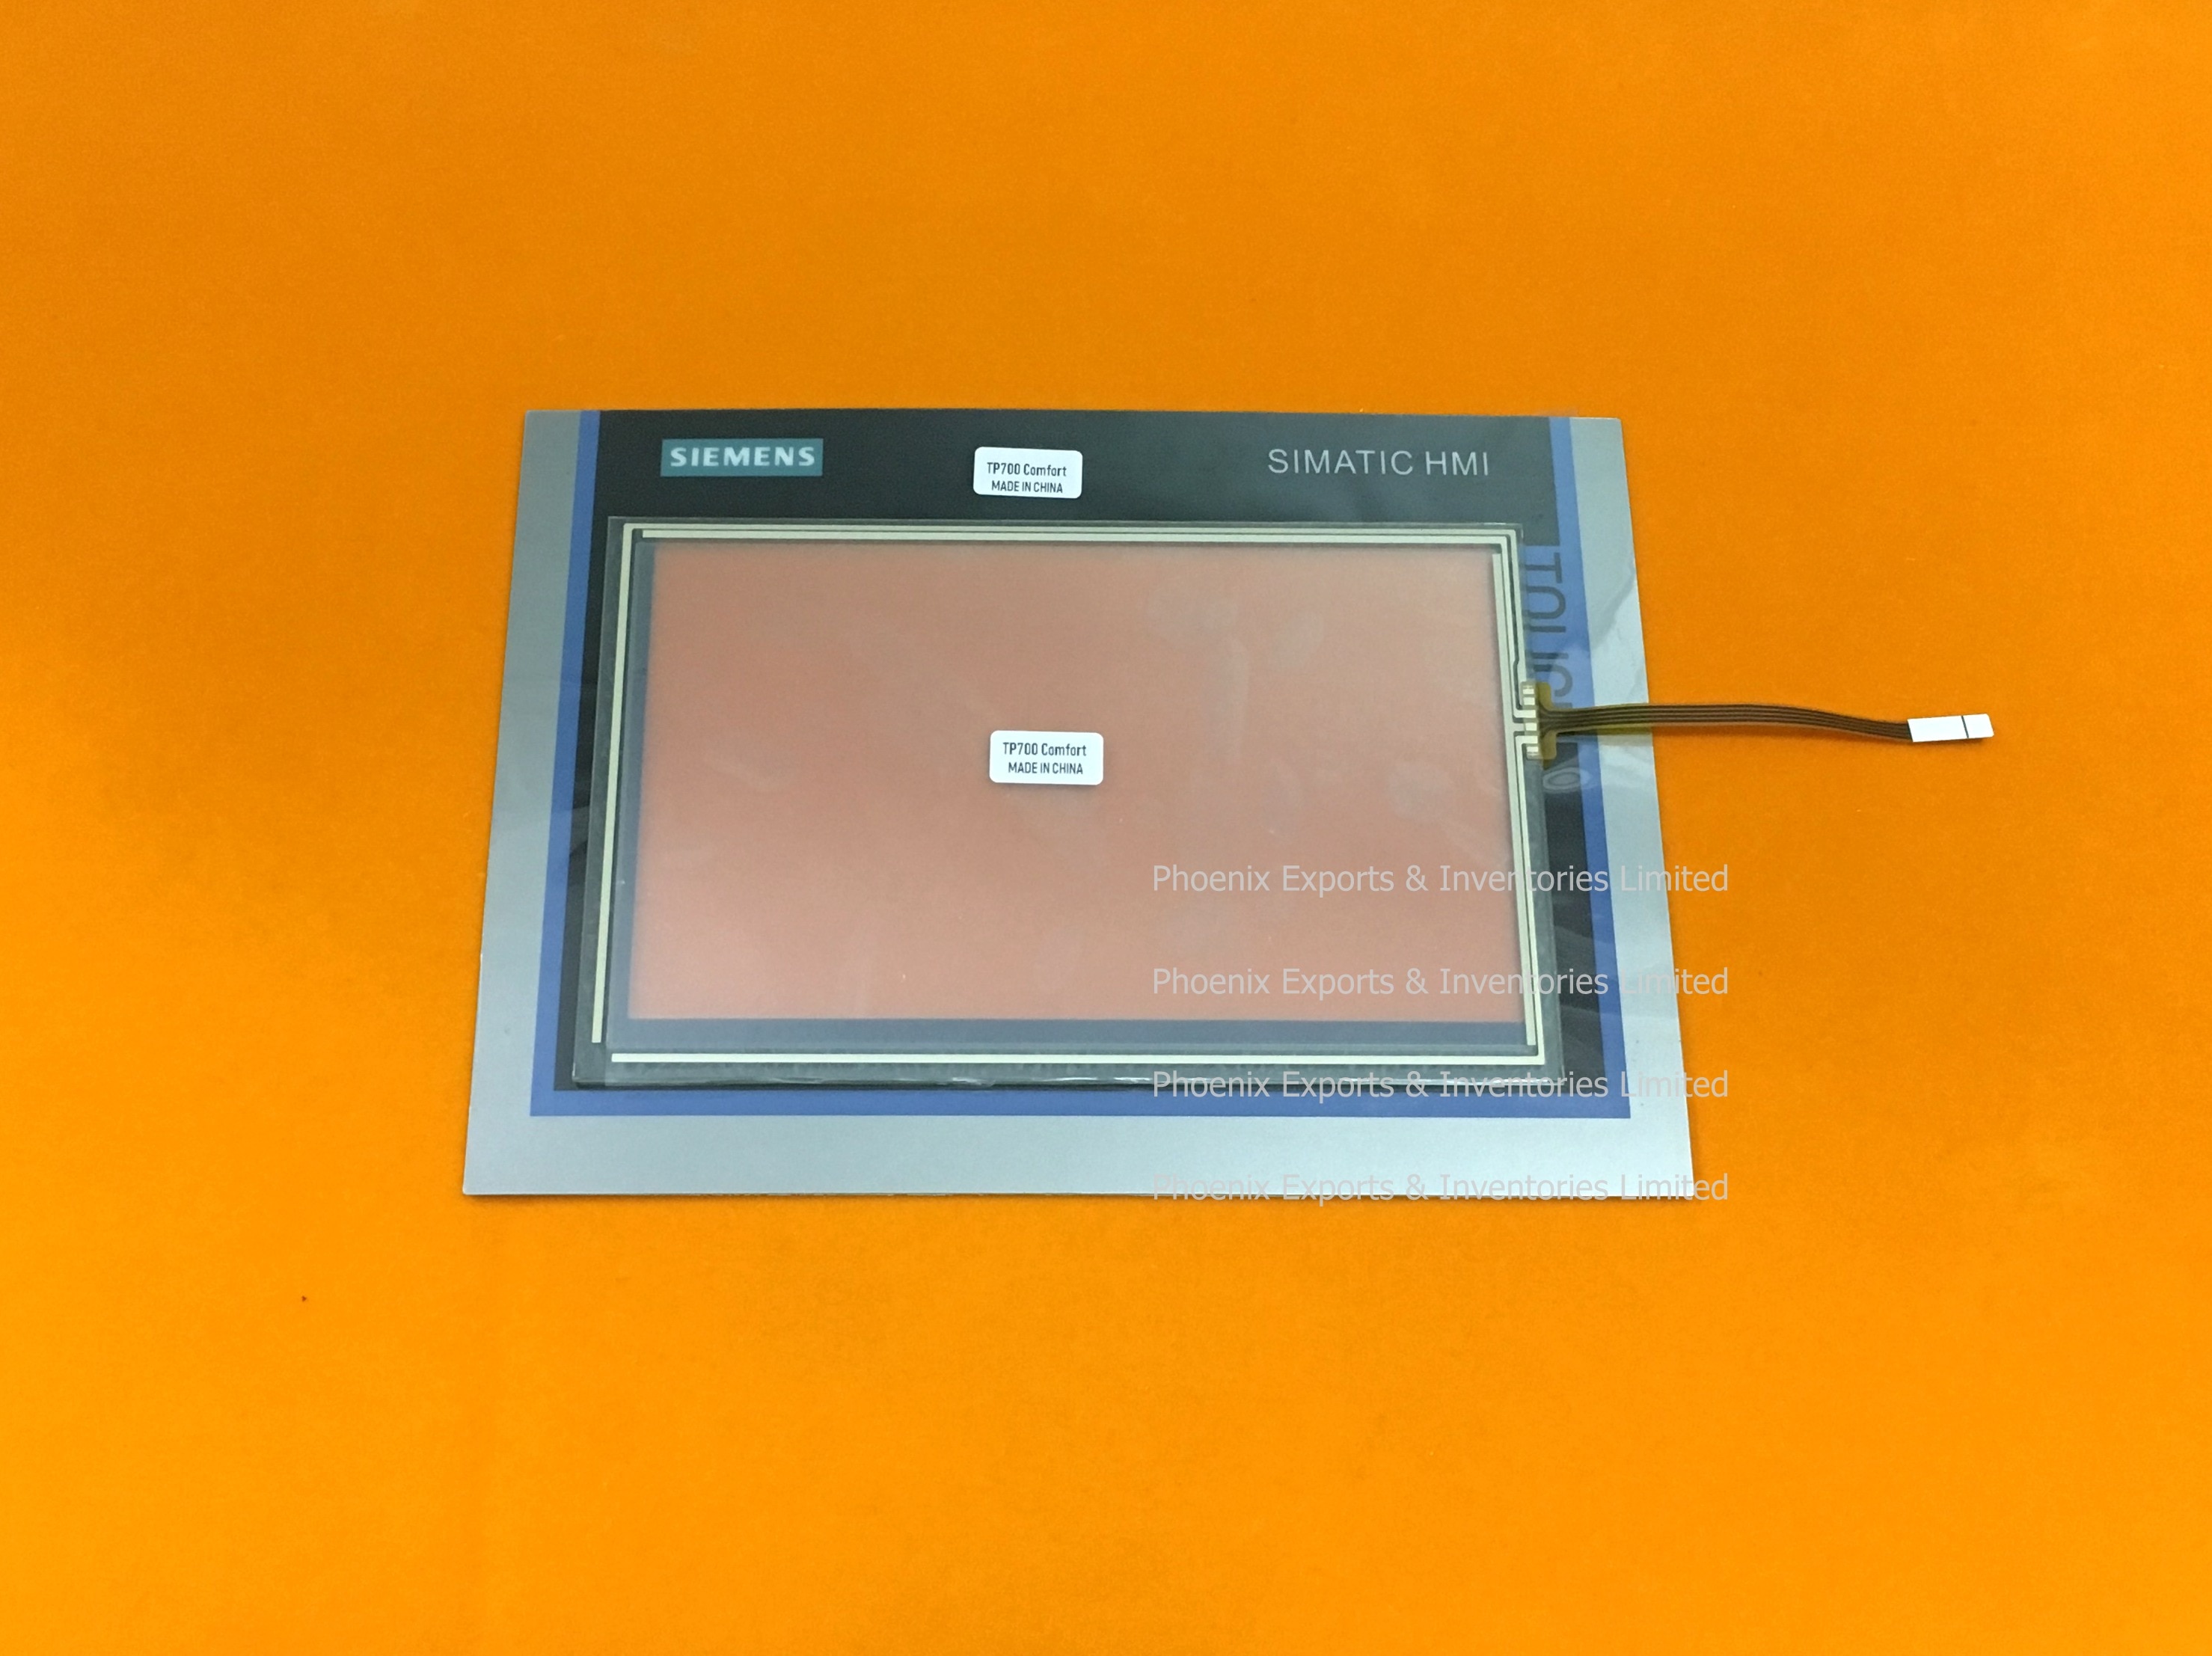 Berøringsskærm og beskyttende filmhud til  tp700 komfort 6 av 2 124-0 gc 01-0 ax 0 digitizer glaspanel pad membran 6 av 2124-0 gc 01-0 ax 0